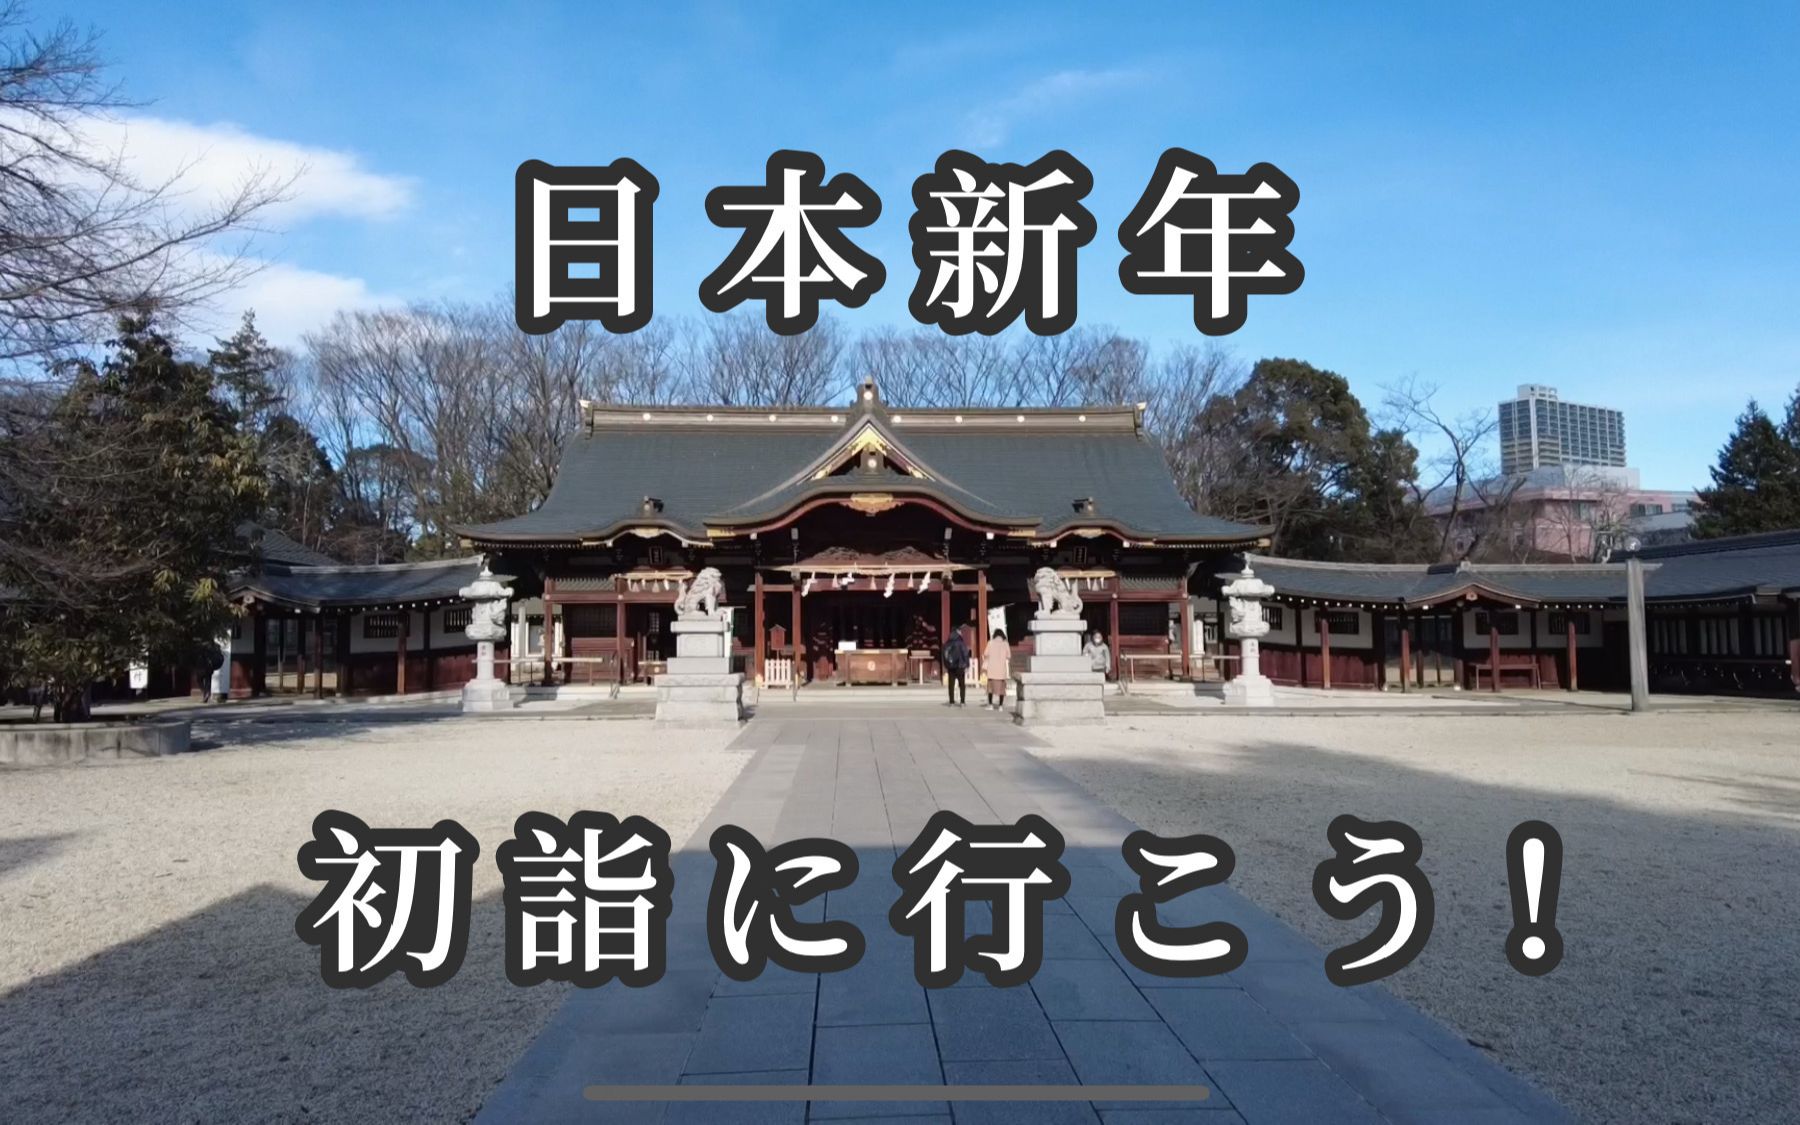 初诣vlog日本新年神社参拜75论每次抽签都觉得被说中了是怎么回事